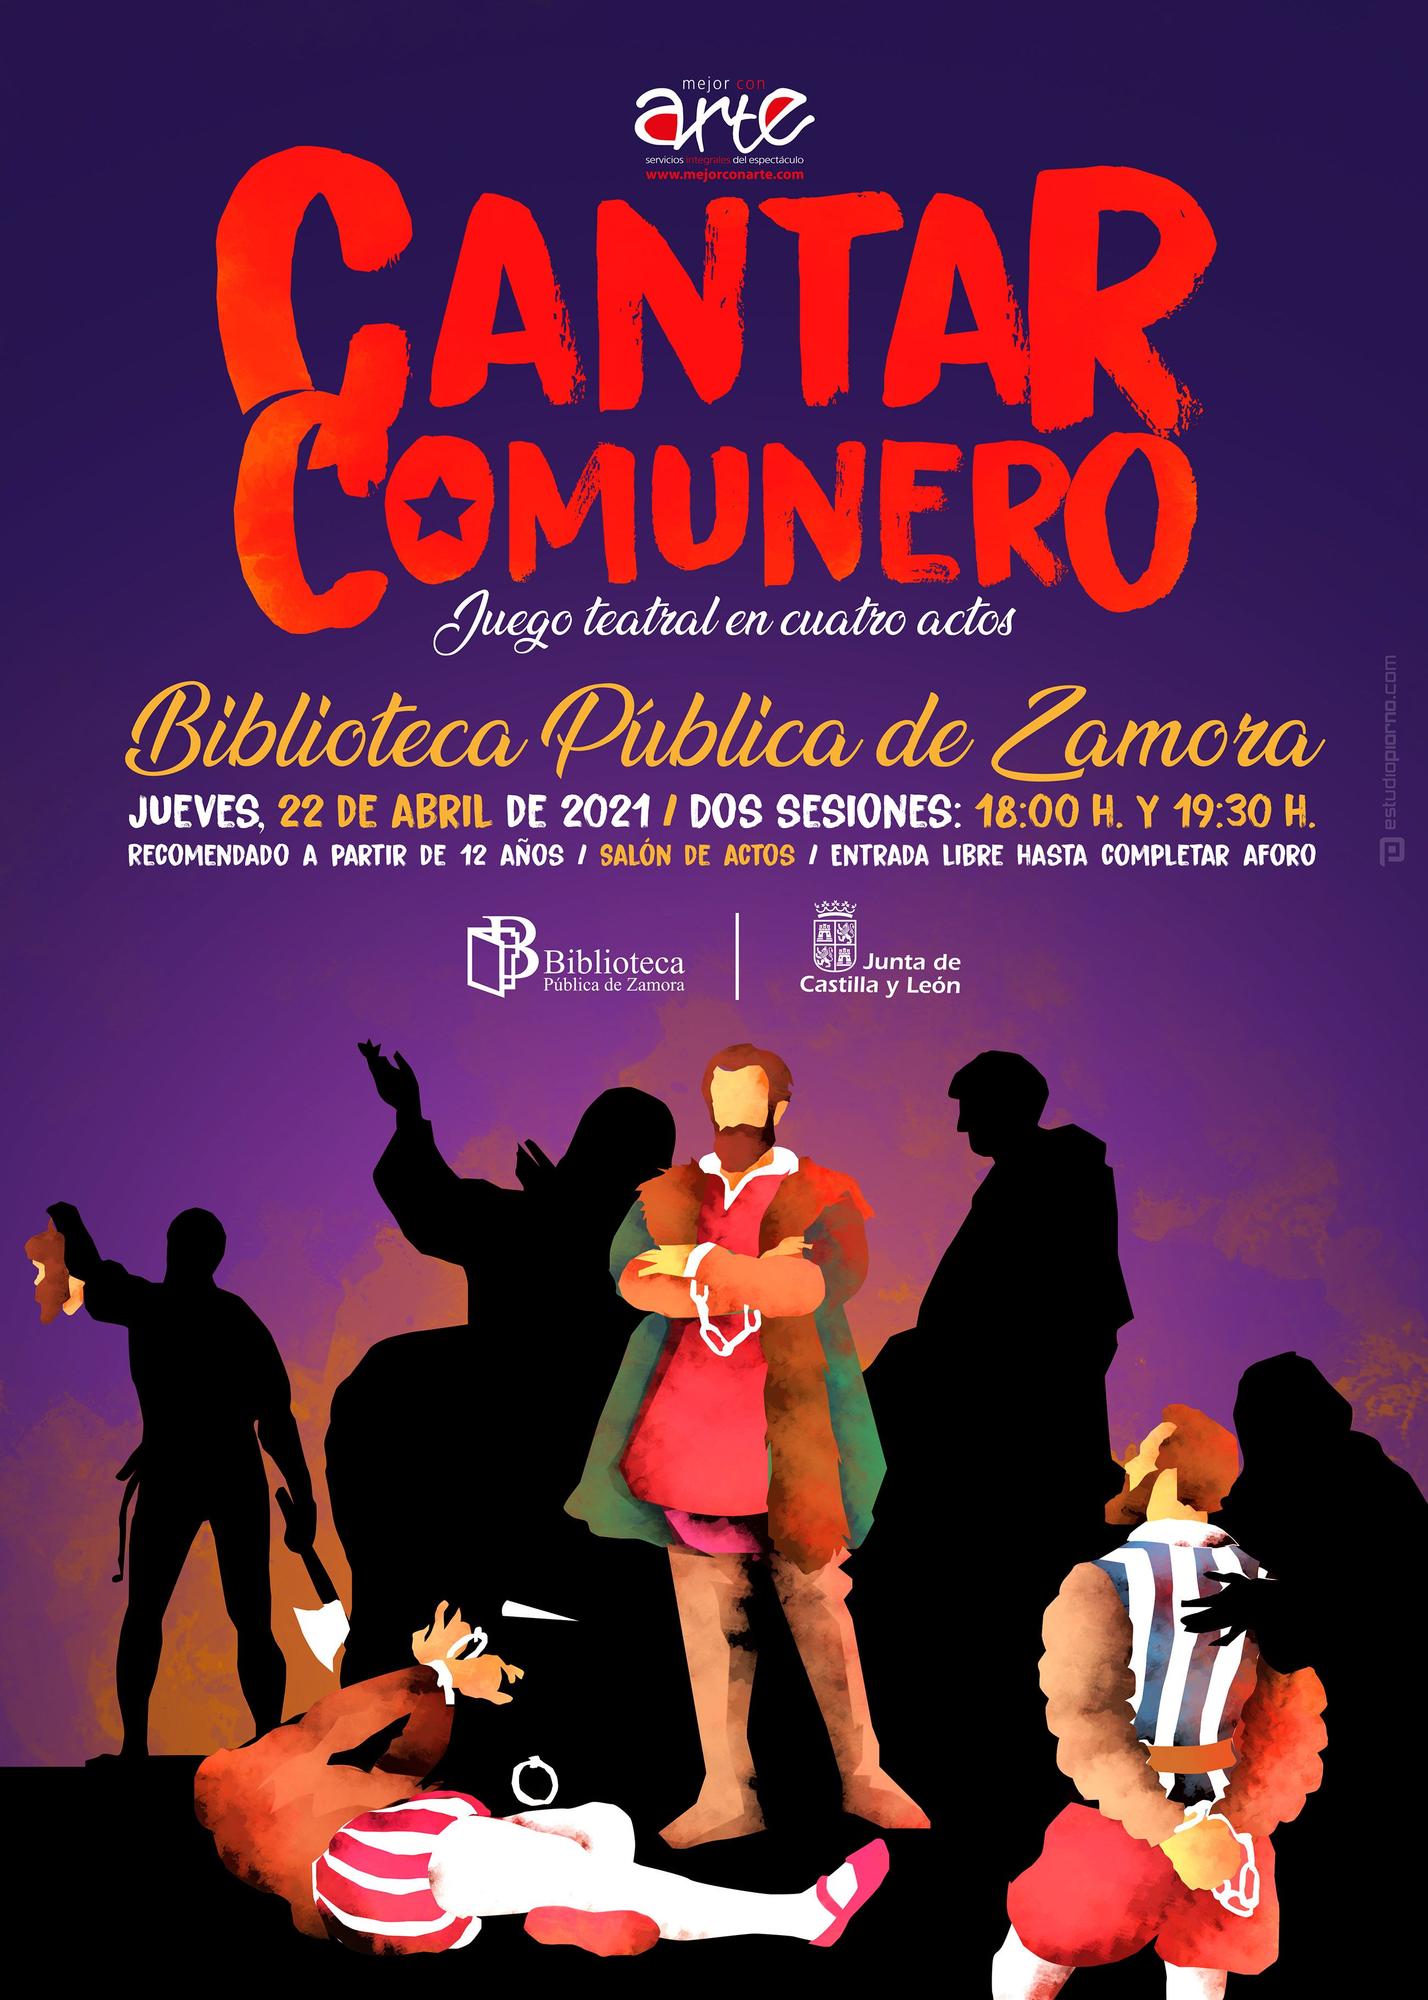 Cartel promocional del Cantar Comunero en la Biblioteca de Zamora.